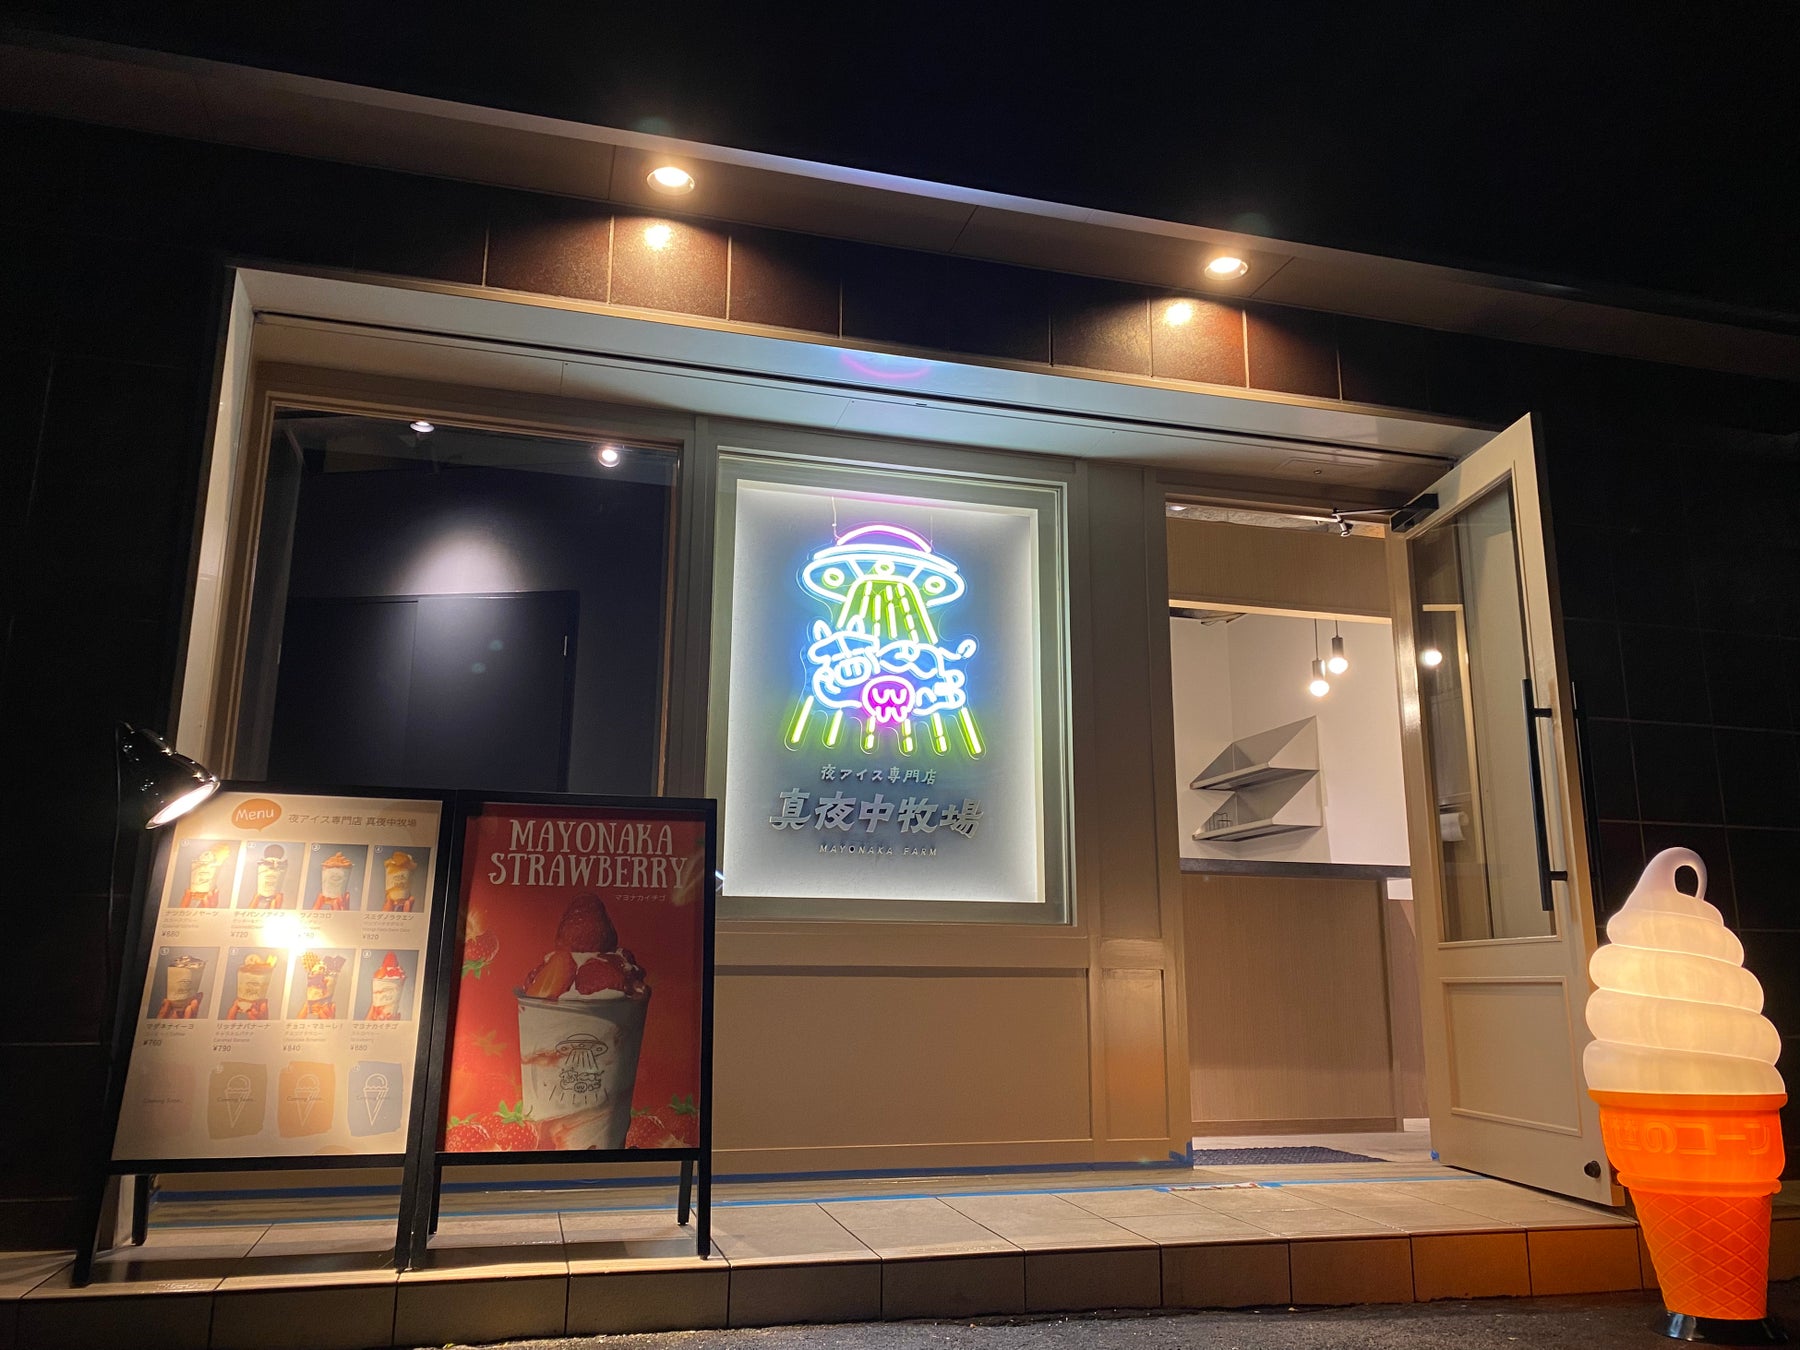 【日本初上陸】ハワイの人気カフェ「ココヘッドカフェ」　東京・新丸ビル「丸の内ハウス」に4月17日（金）オープン　「コーンフレークフレンチトースト」「ココモコ」など現地の看板メニューがラインナップ